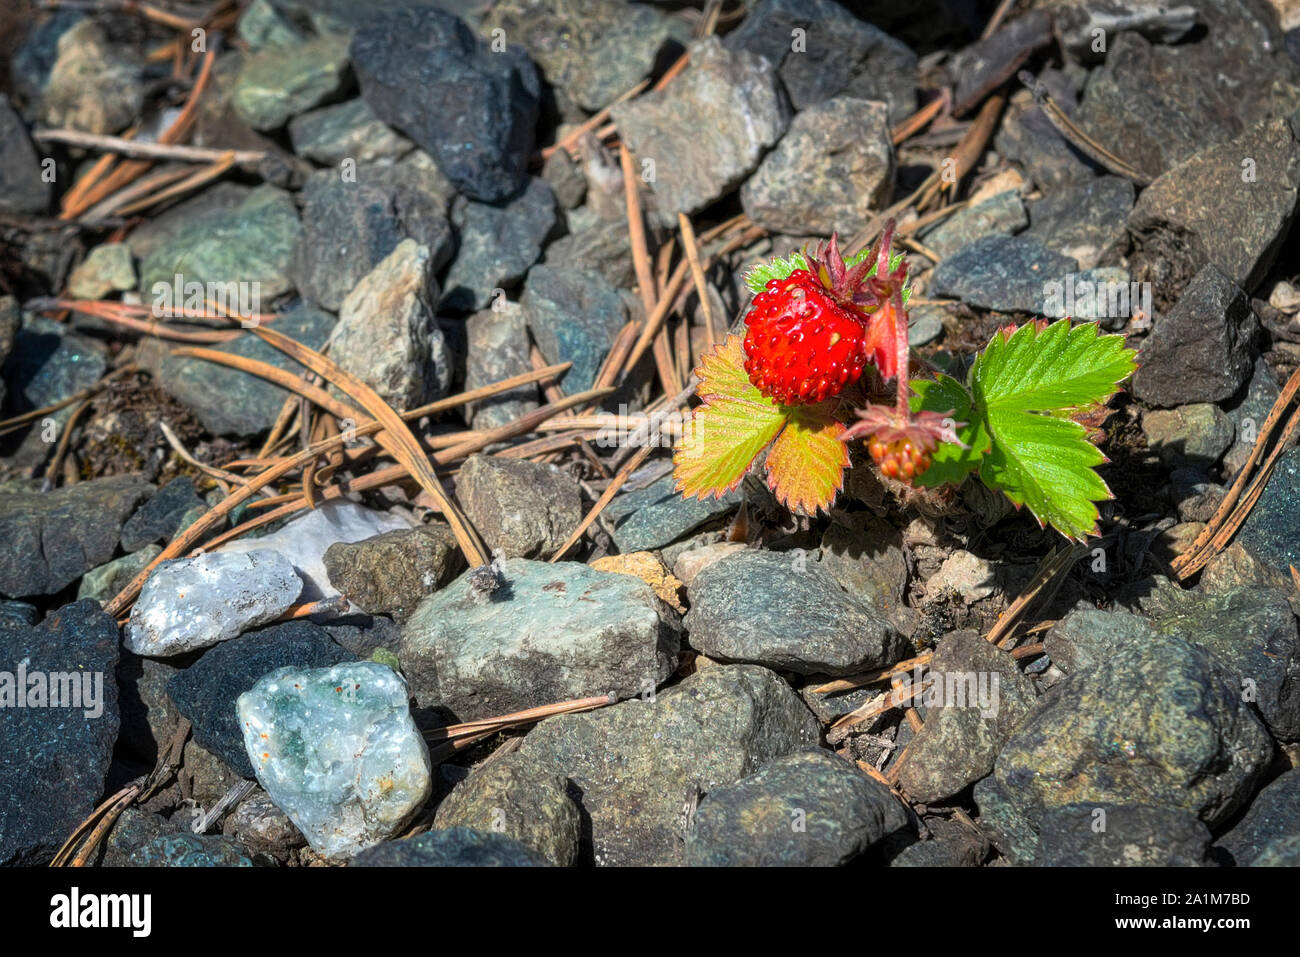 Eine einzige Bush Wald Erdbeeren mit einer großen reife rote Beere wächst  auf steinigen Boden mit der gefallenen Nadeln bedeckt. In der Nähe von  wilden Erdbeeren Stockfotografie - Alamy